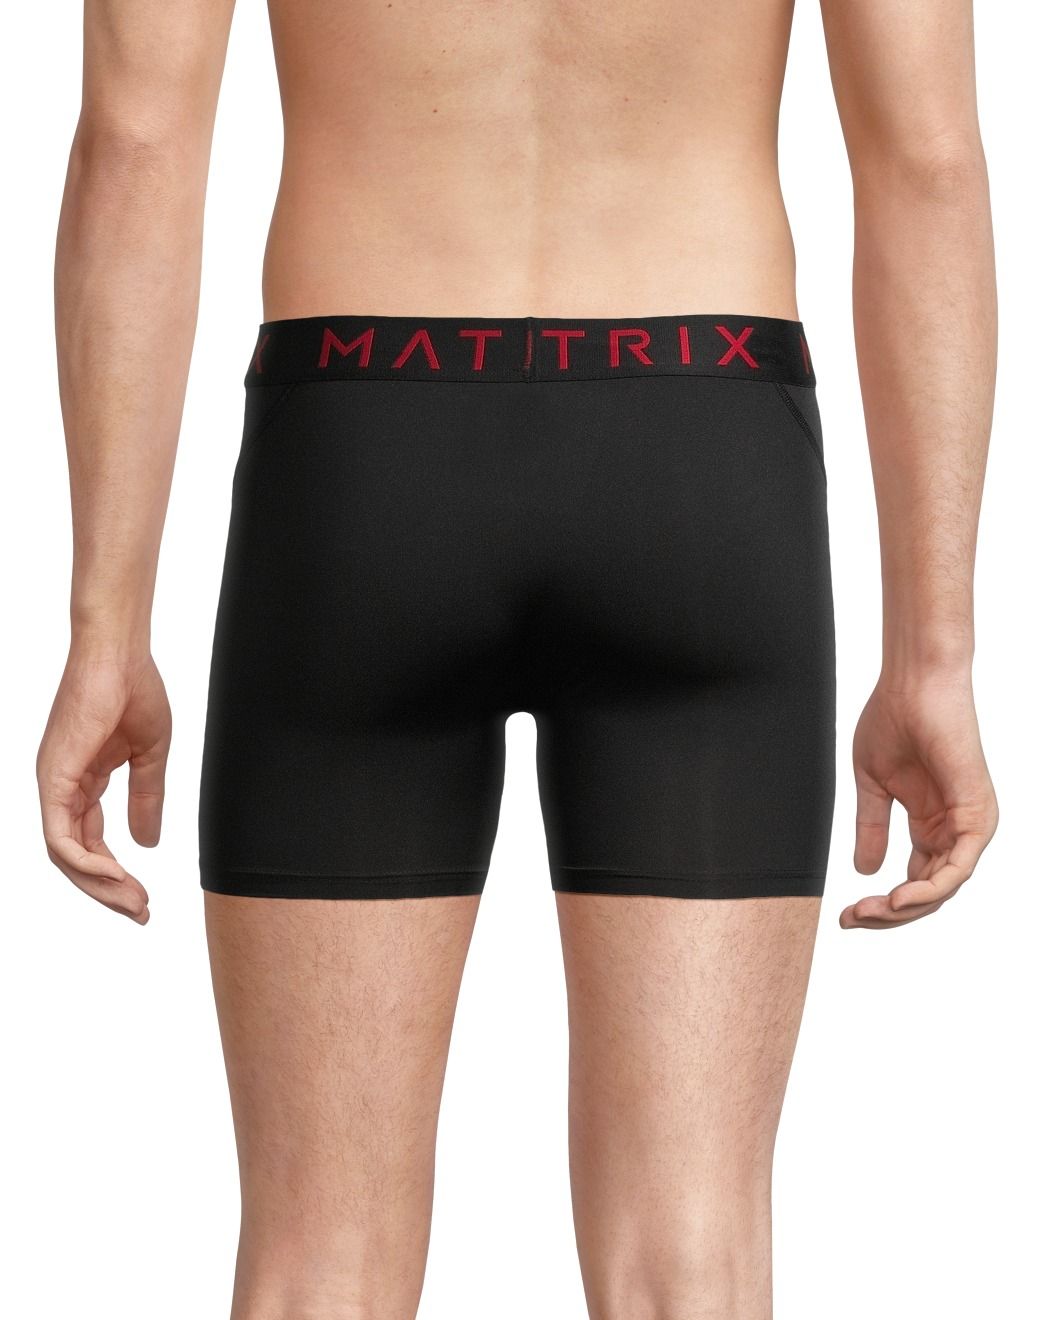 Boxer Briefs, Underwear For Men